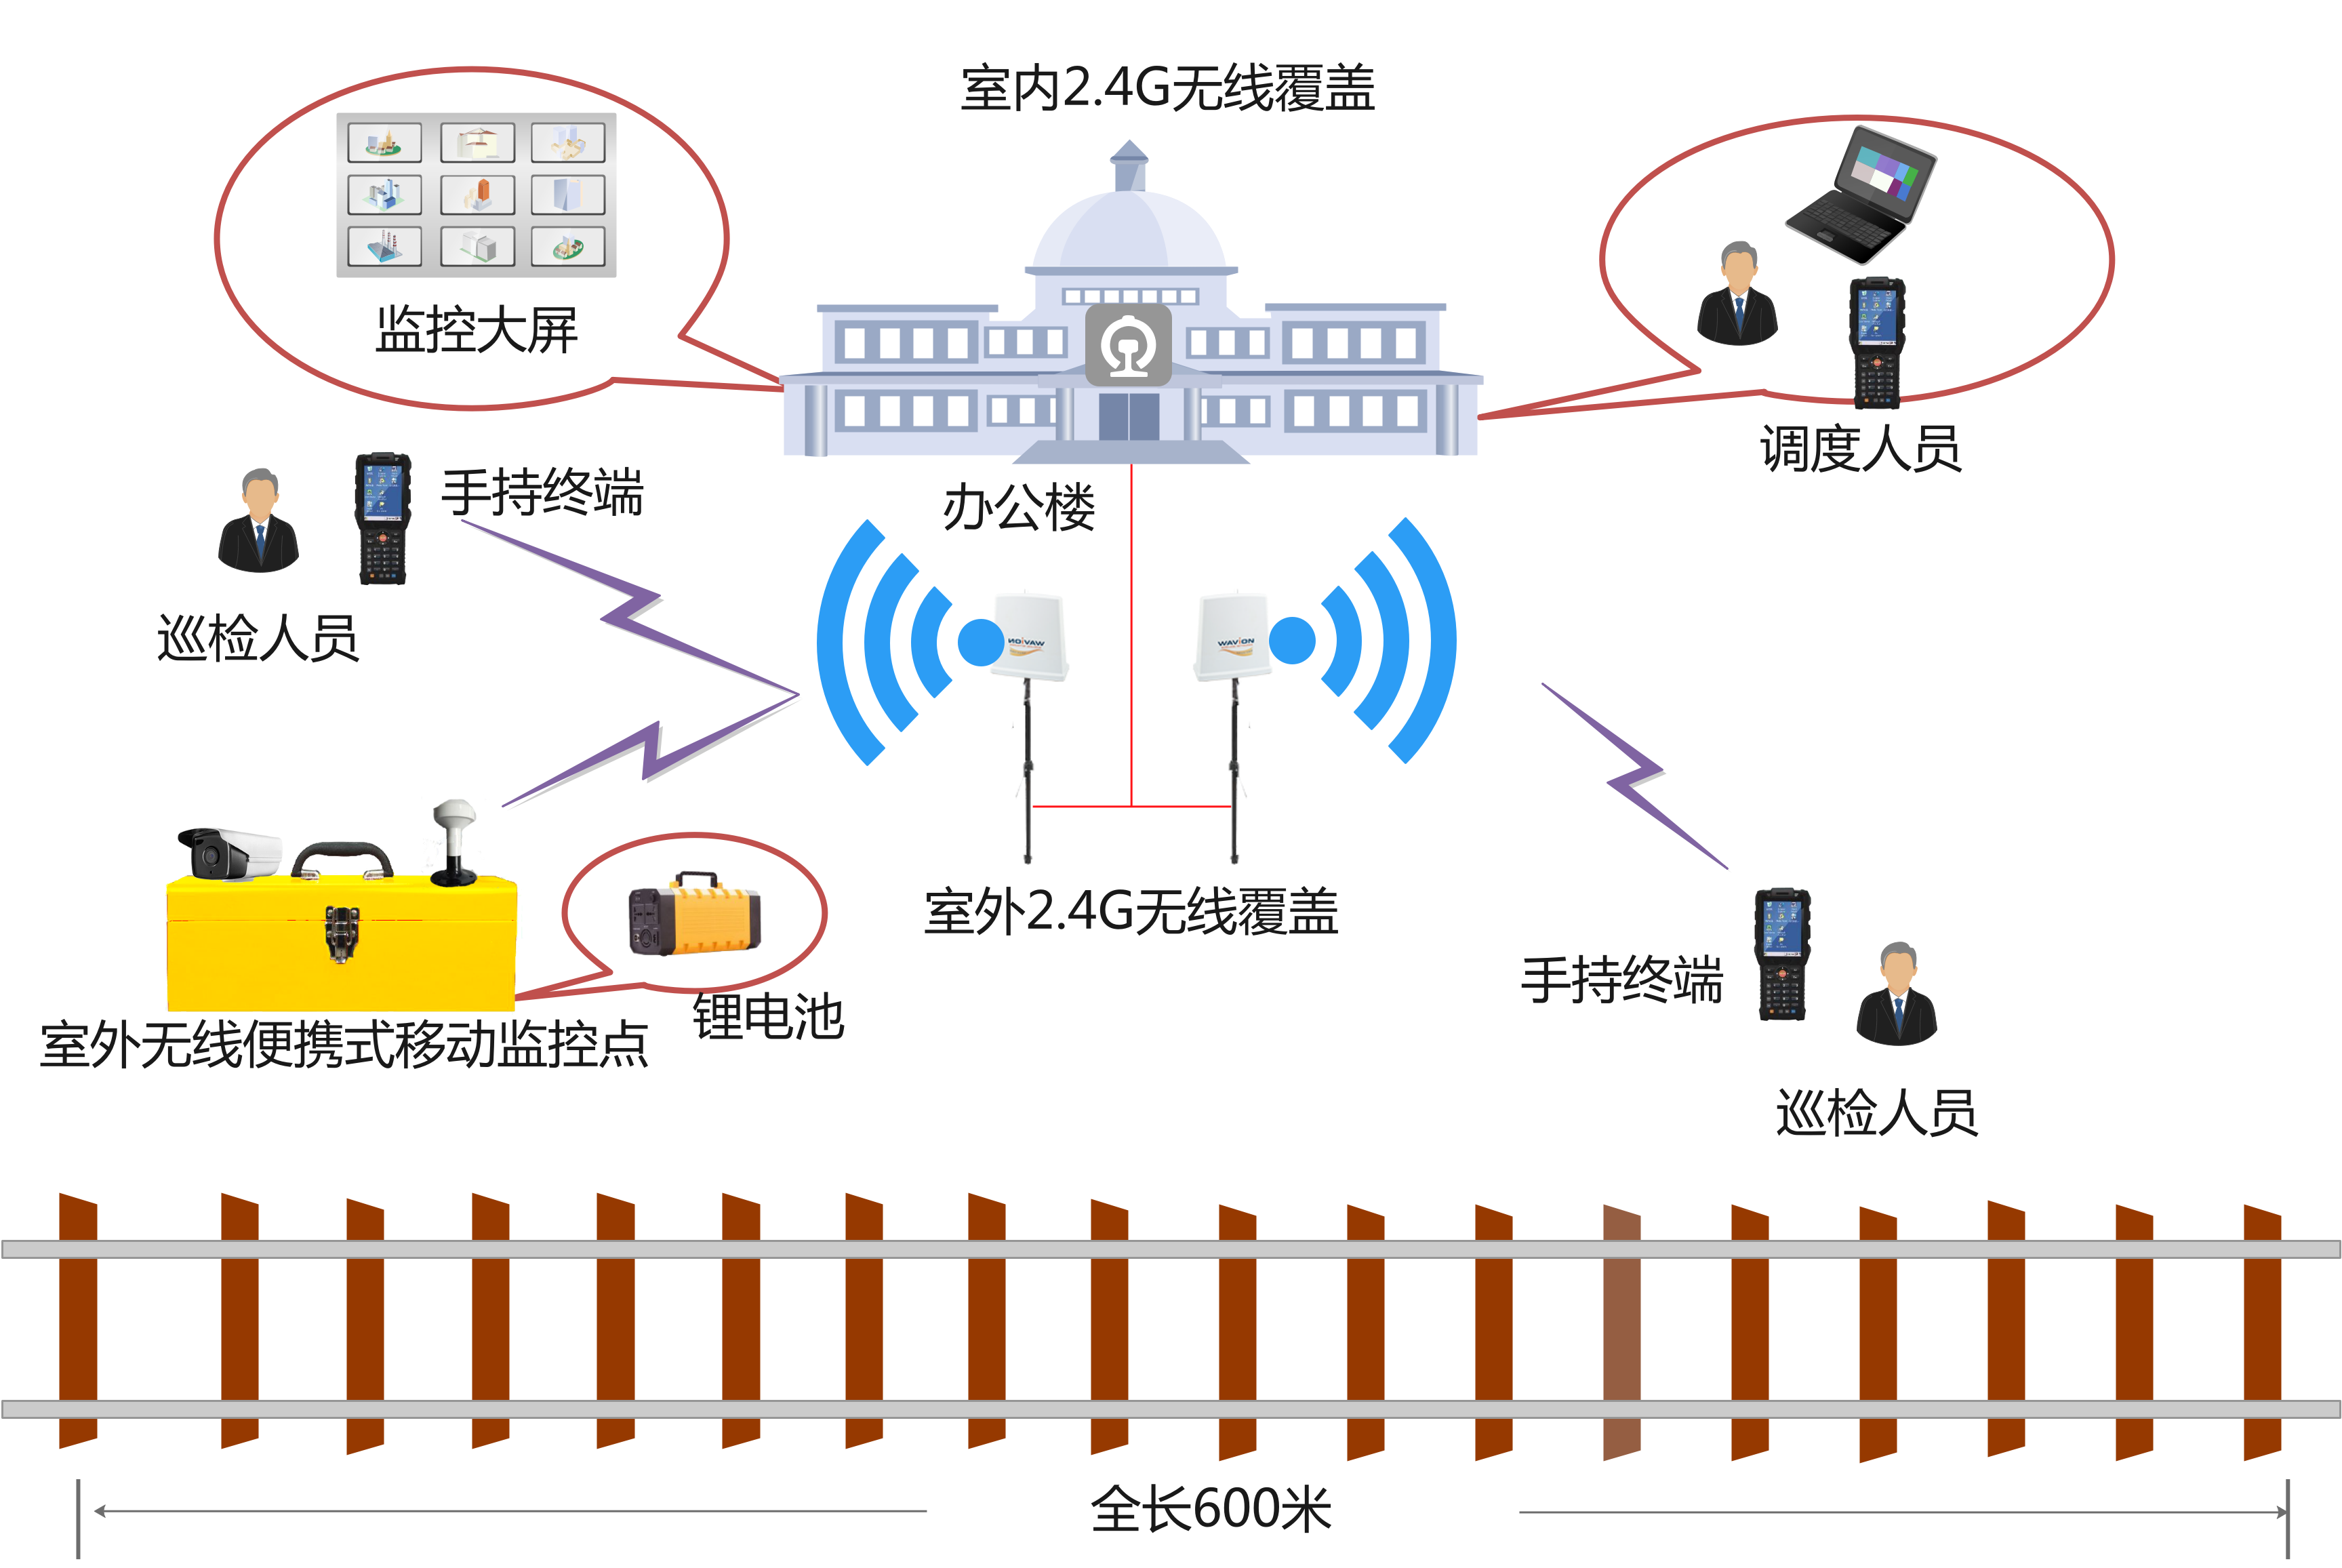 系统中,避免频率干扰,重复建设,节省资金和浪费; 铁路车站无线覆盖